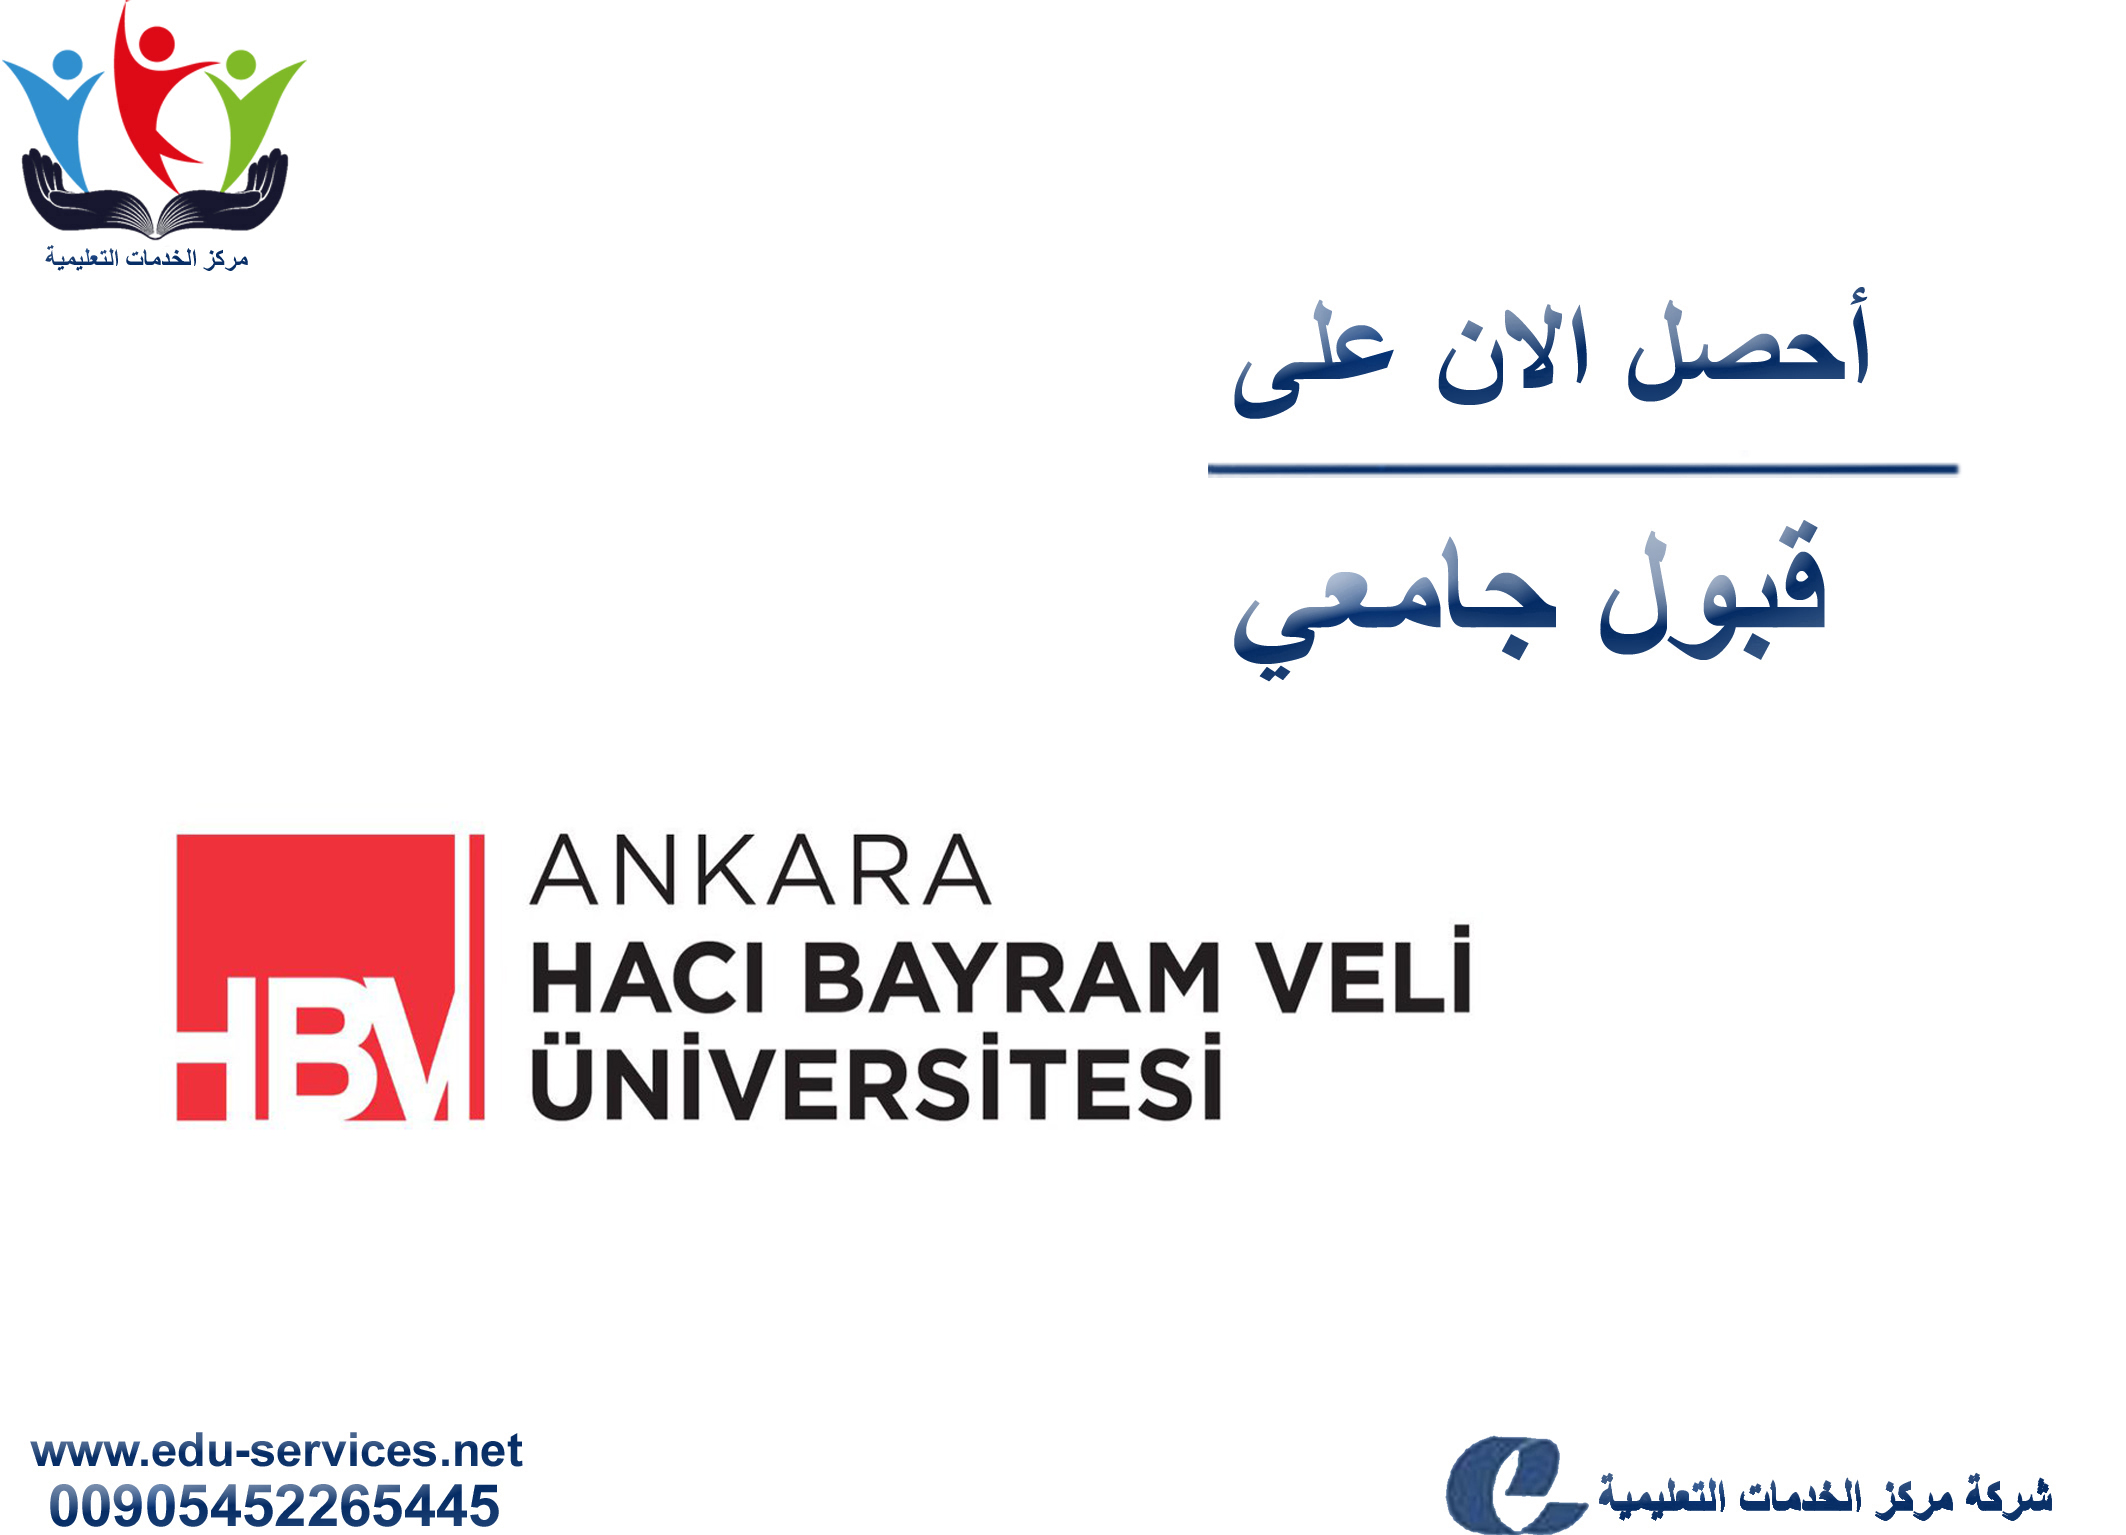 افتتاح التسجيل على جامعة أنقرة حجي بيرم ولي لبرنامج الدراسات العليا للعام 2019-2020